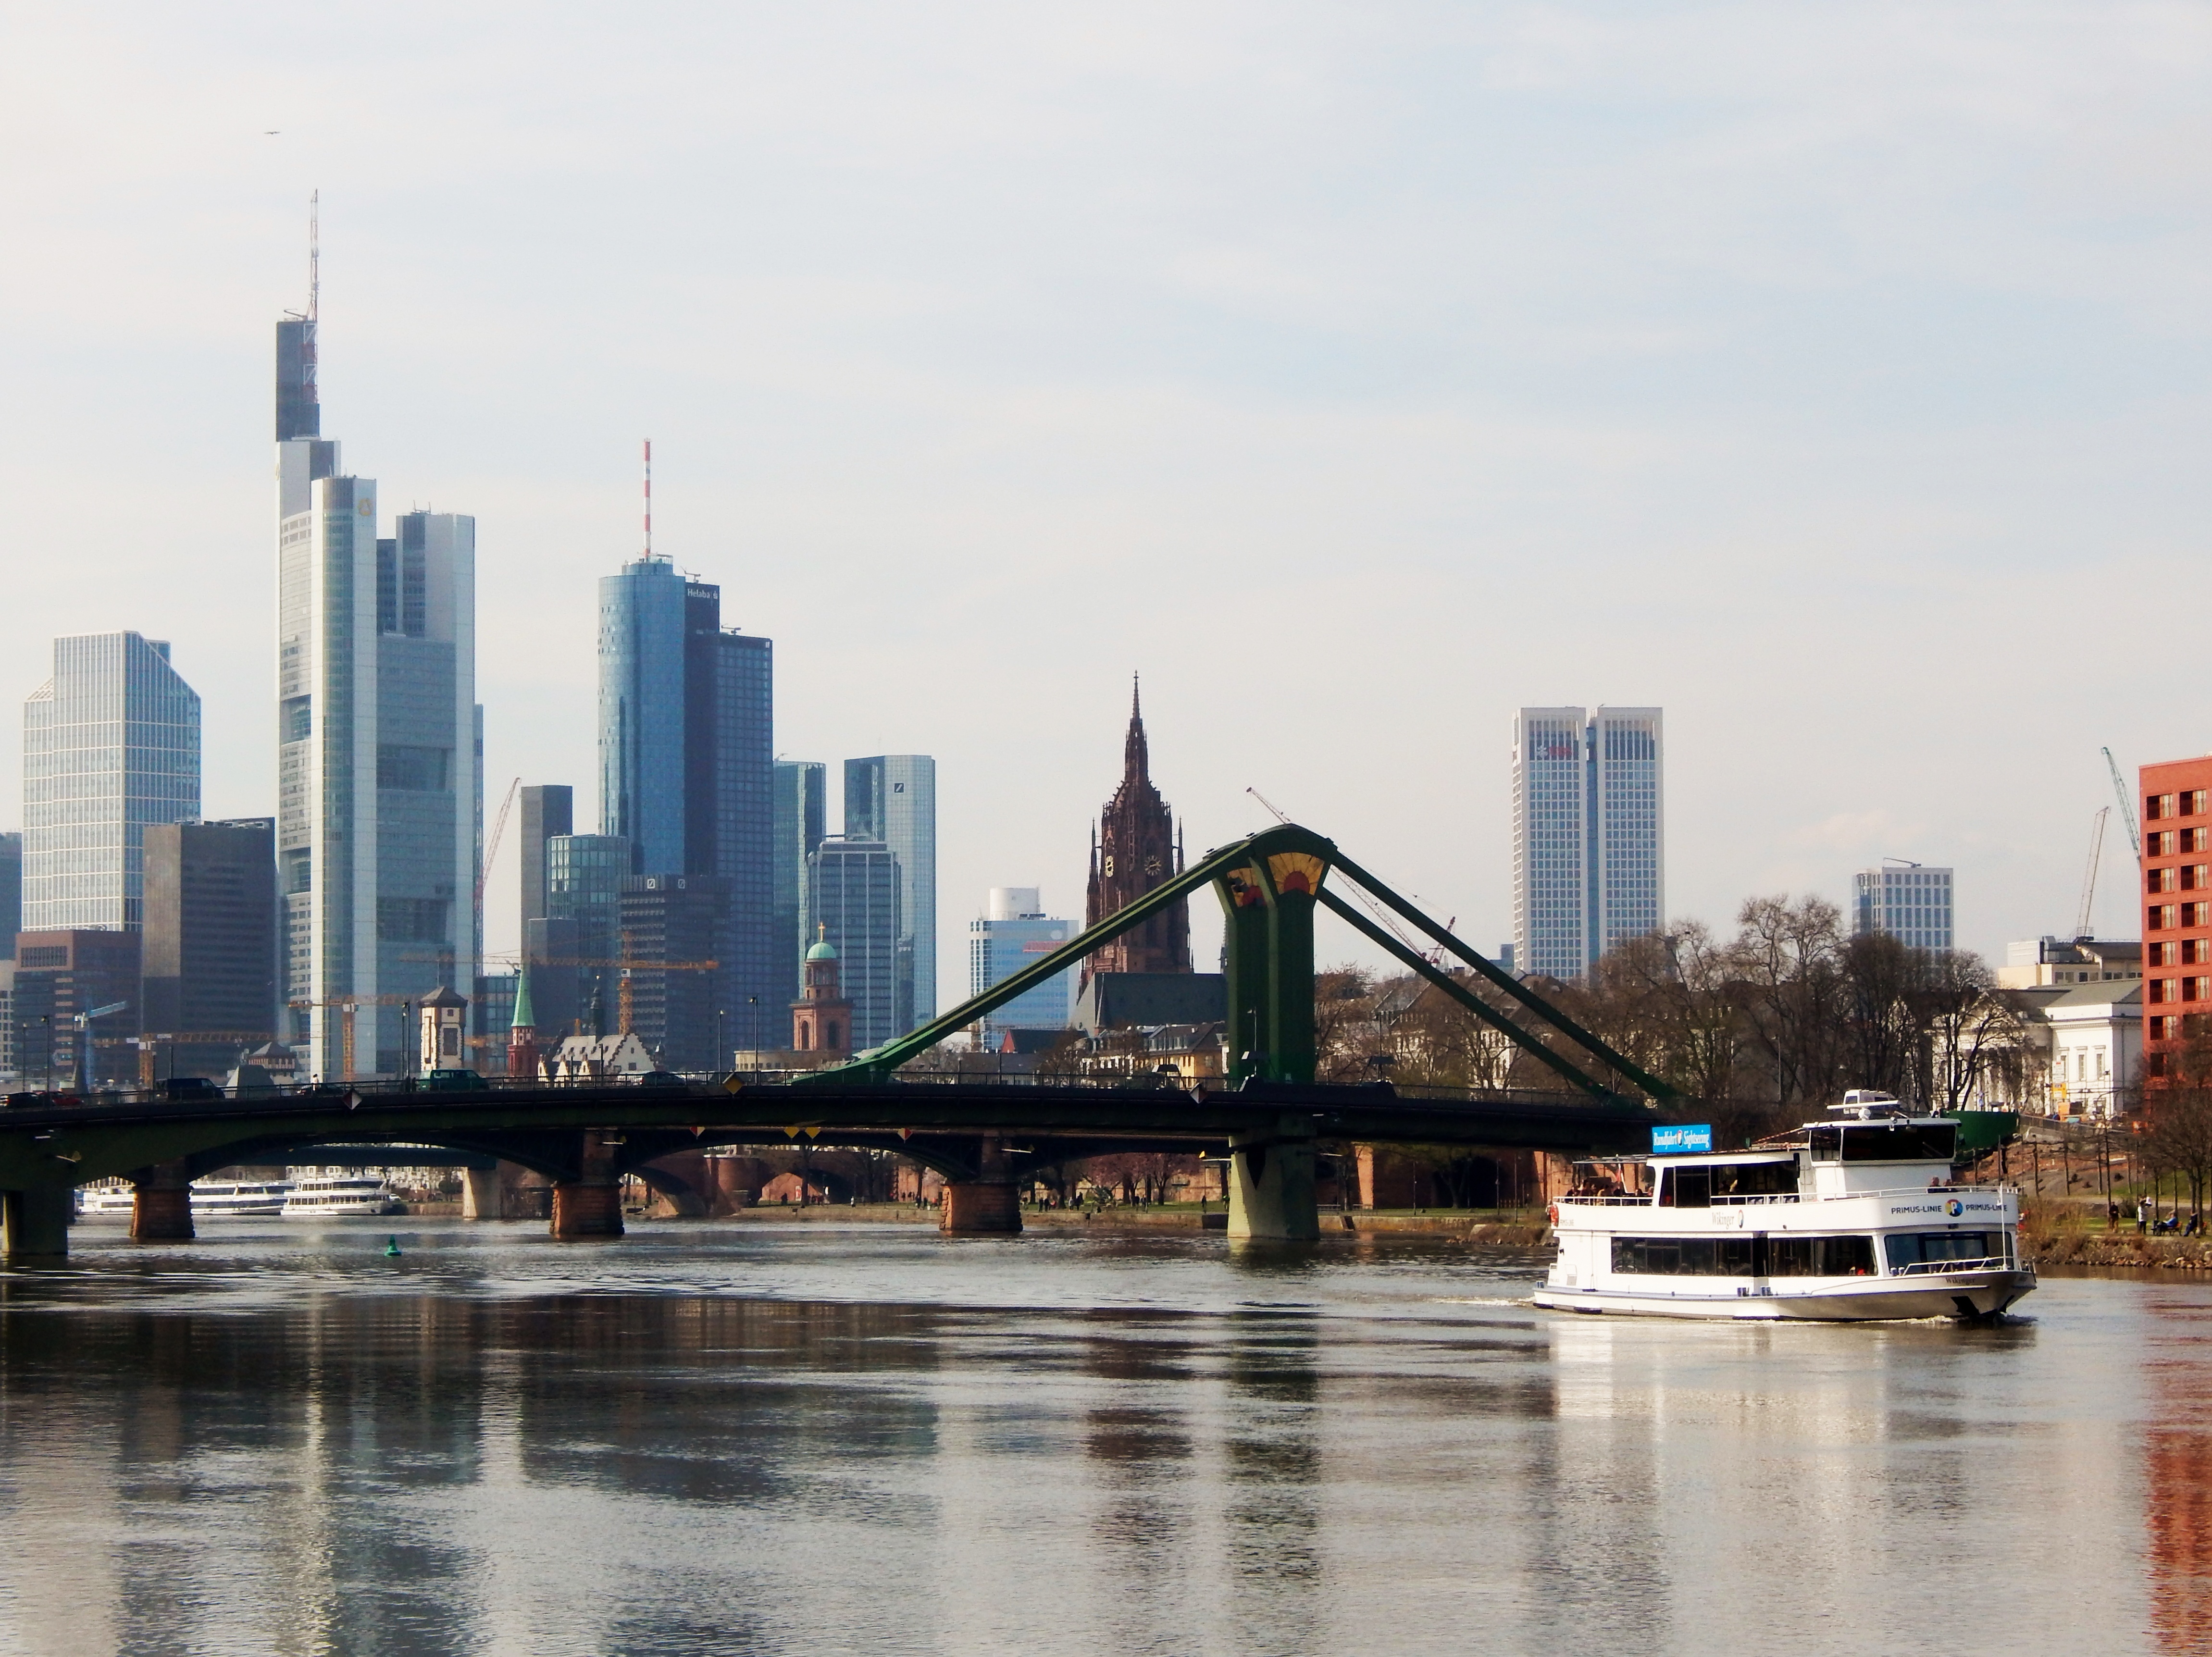  Frankfurt_RiverView3-1.jpg